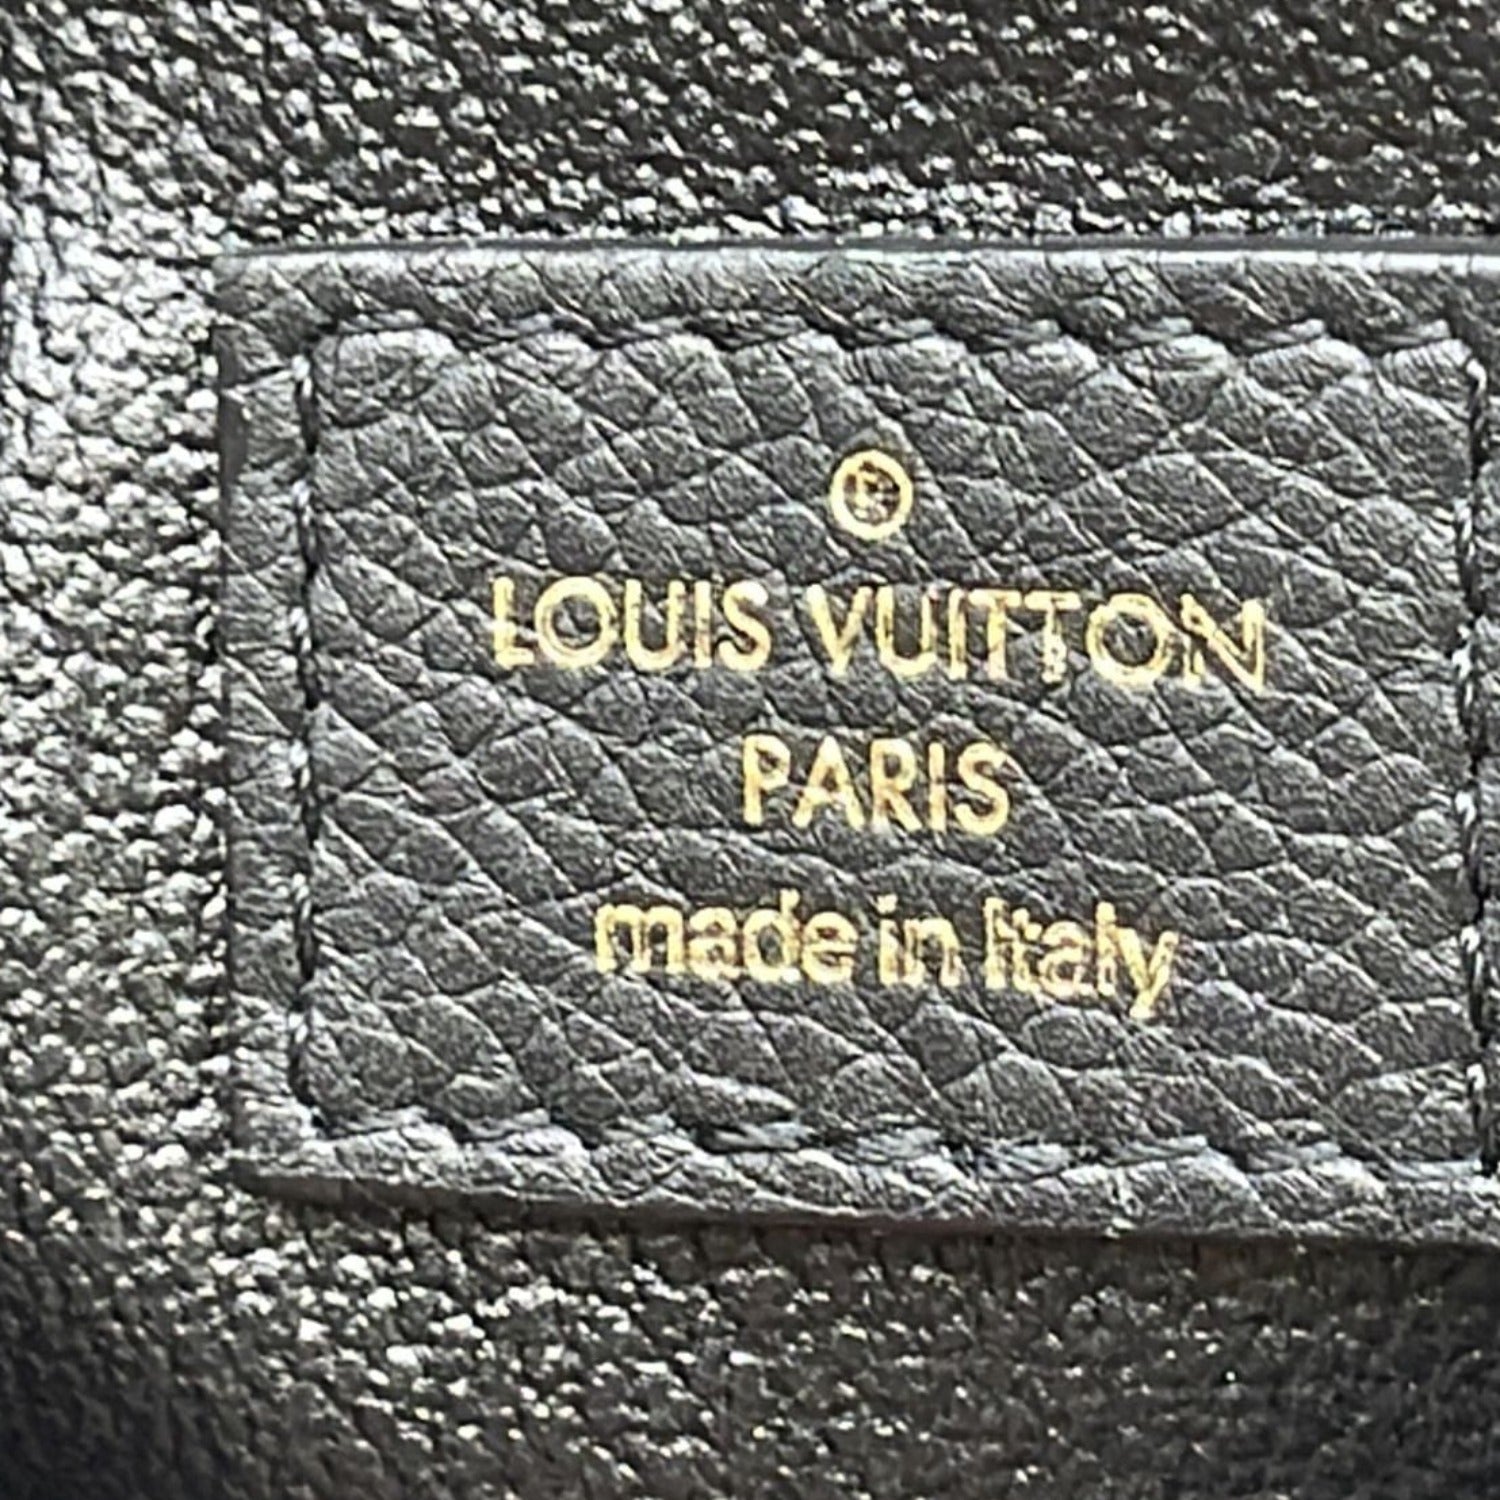 Authenticated Louis Vuitton Monogram Pallas Beauty Case Brown Canvas Vanity  Bag